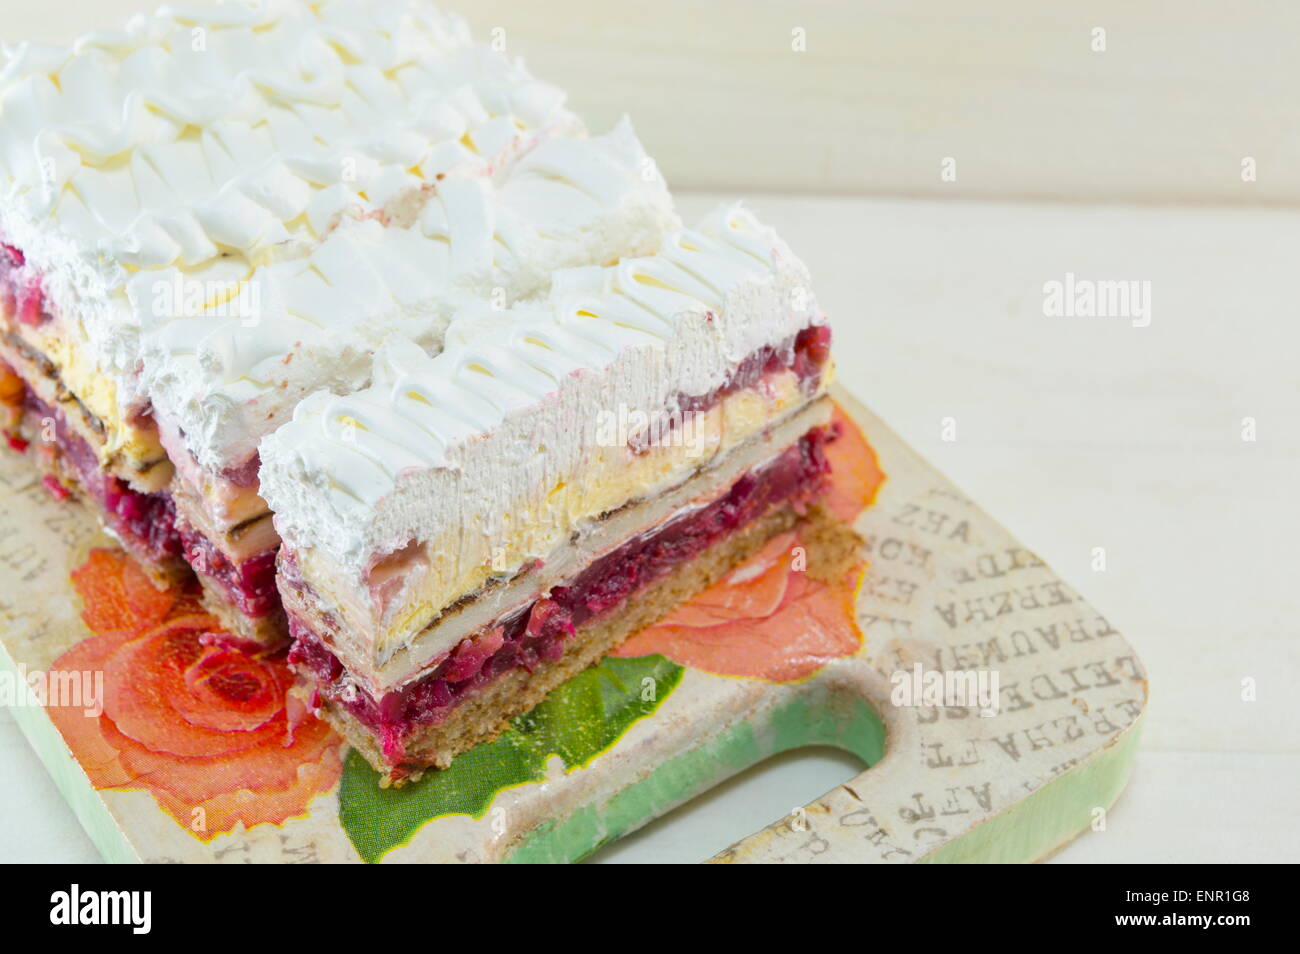 Gâteau aux fraises fait maison avec de la crème fouettée a plate Banque D'Images